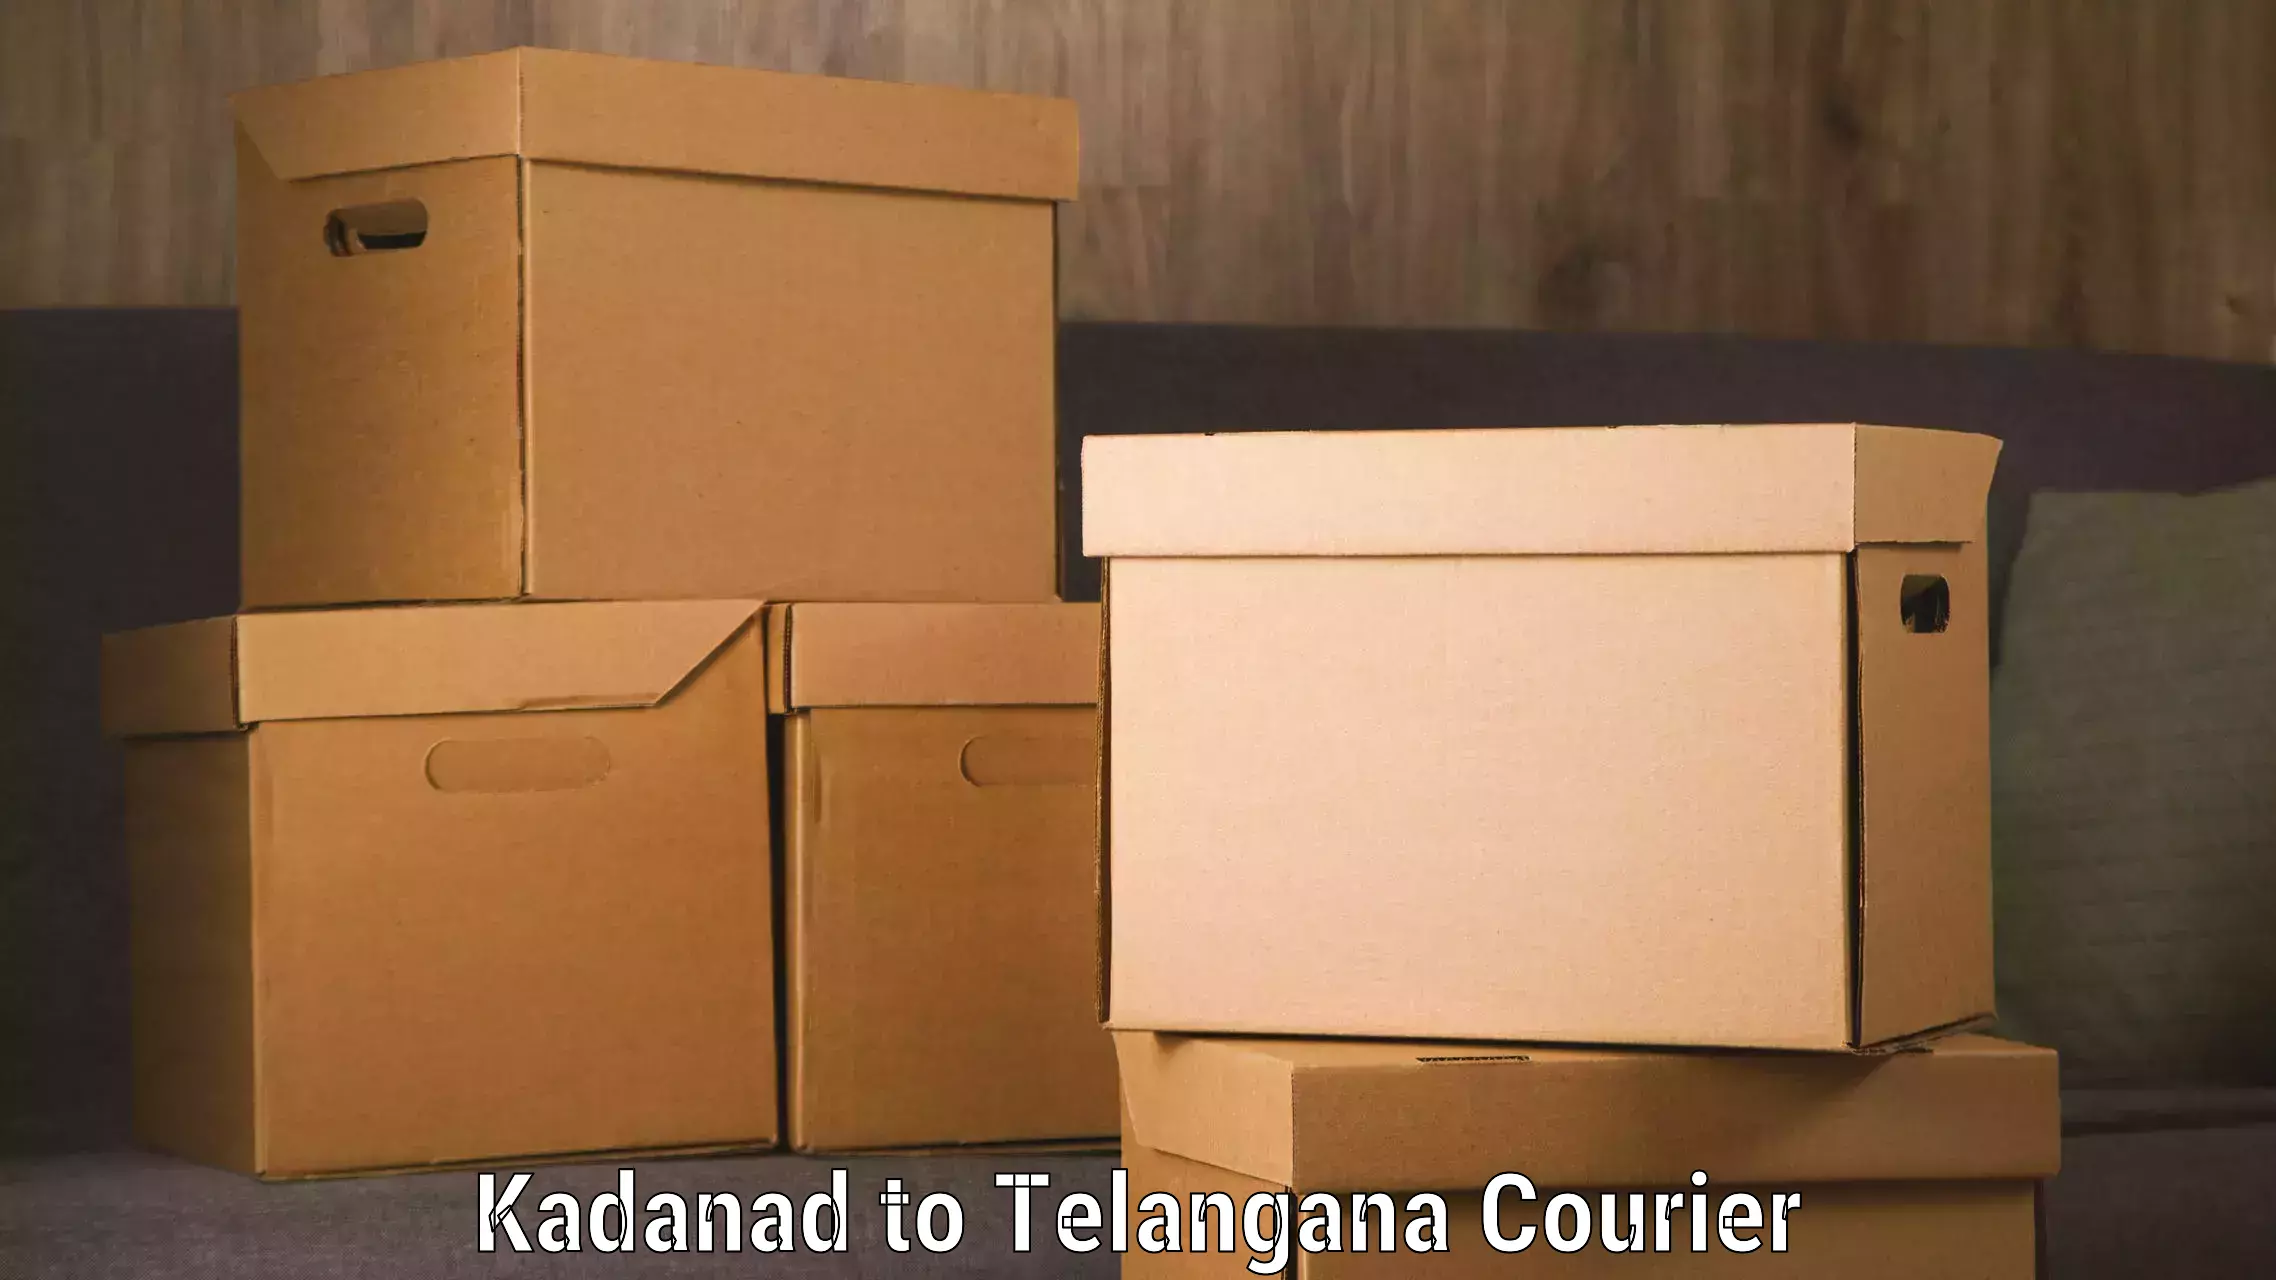 Smart shipping technology Kadanad to Achampet